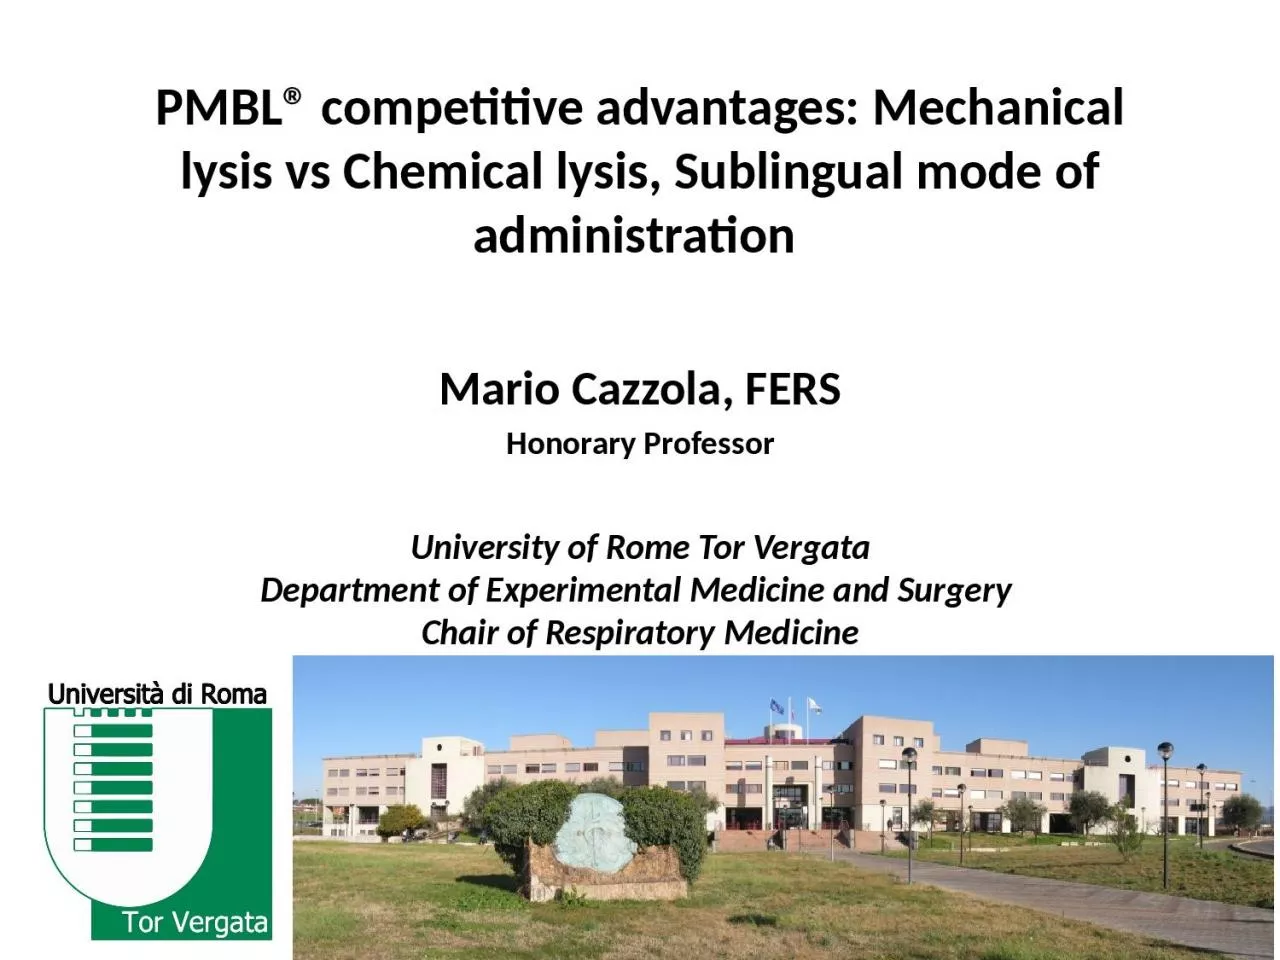 PMBL® competitive advantages: Mechanical